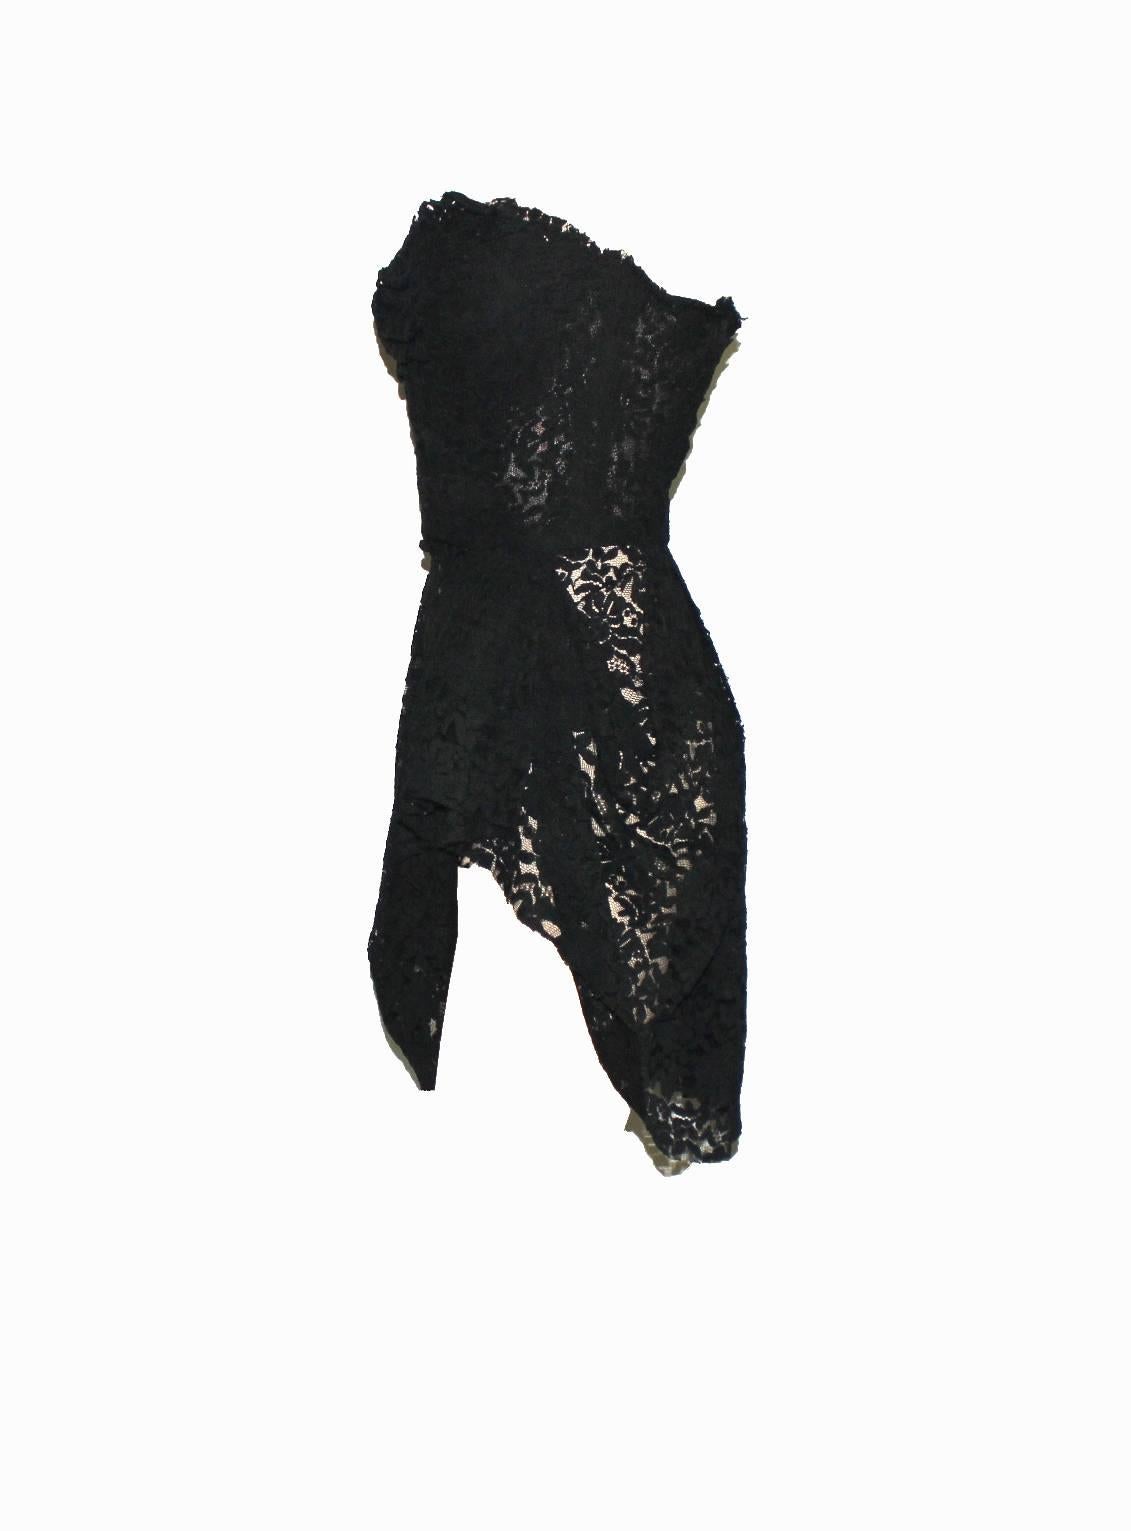 black lace mini dress